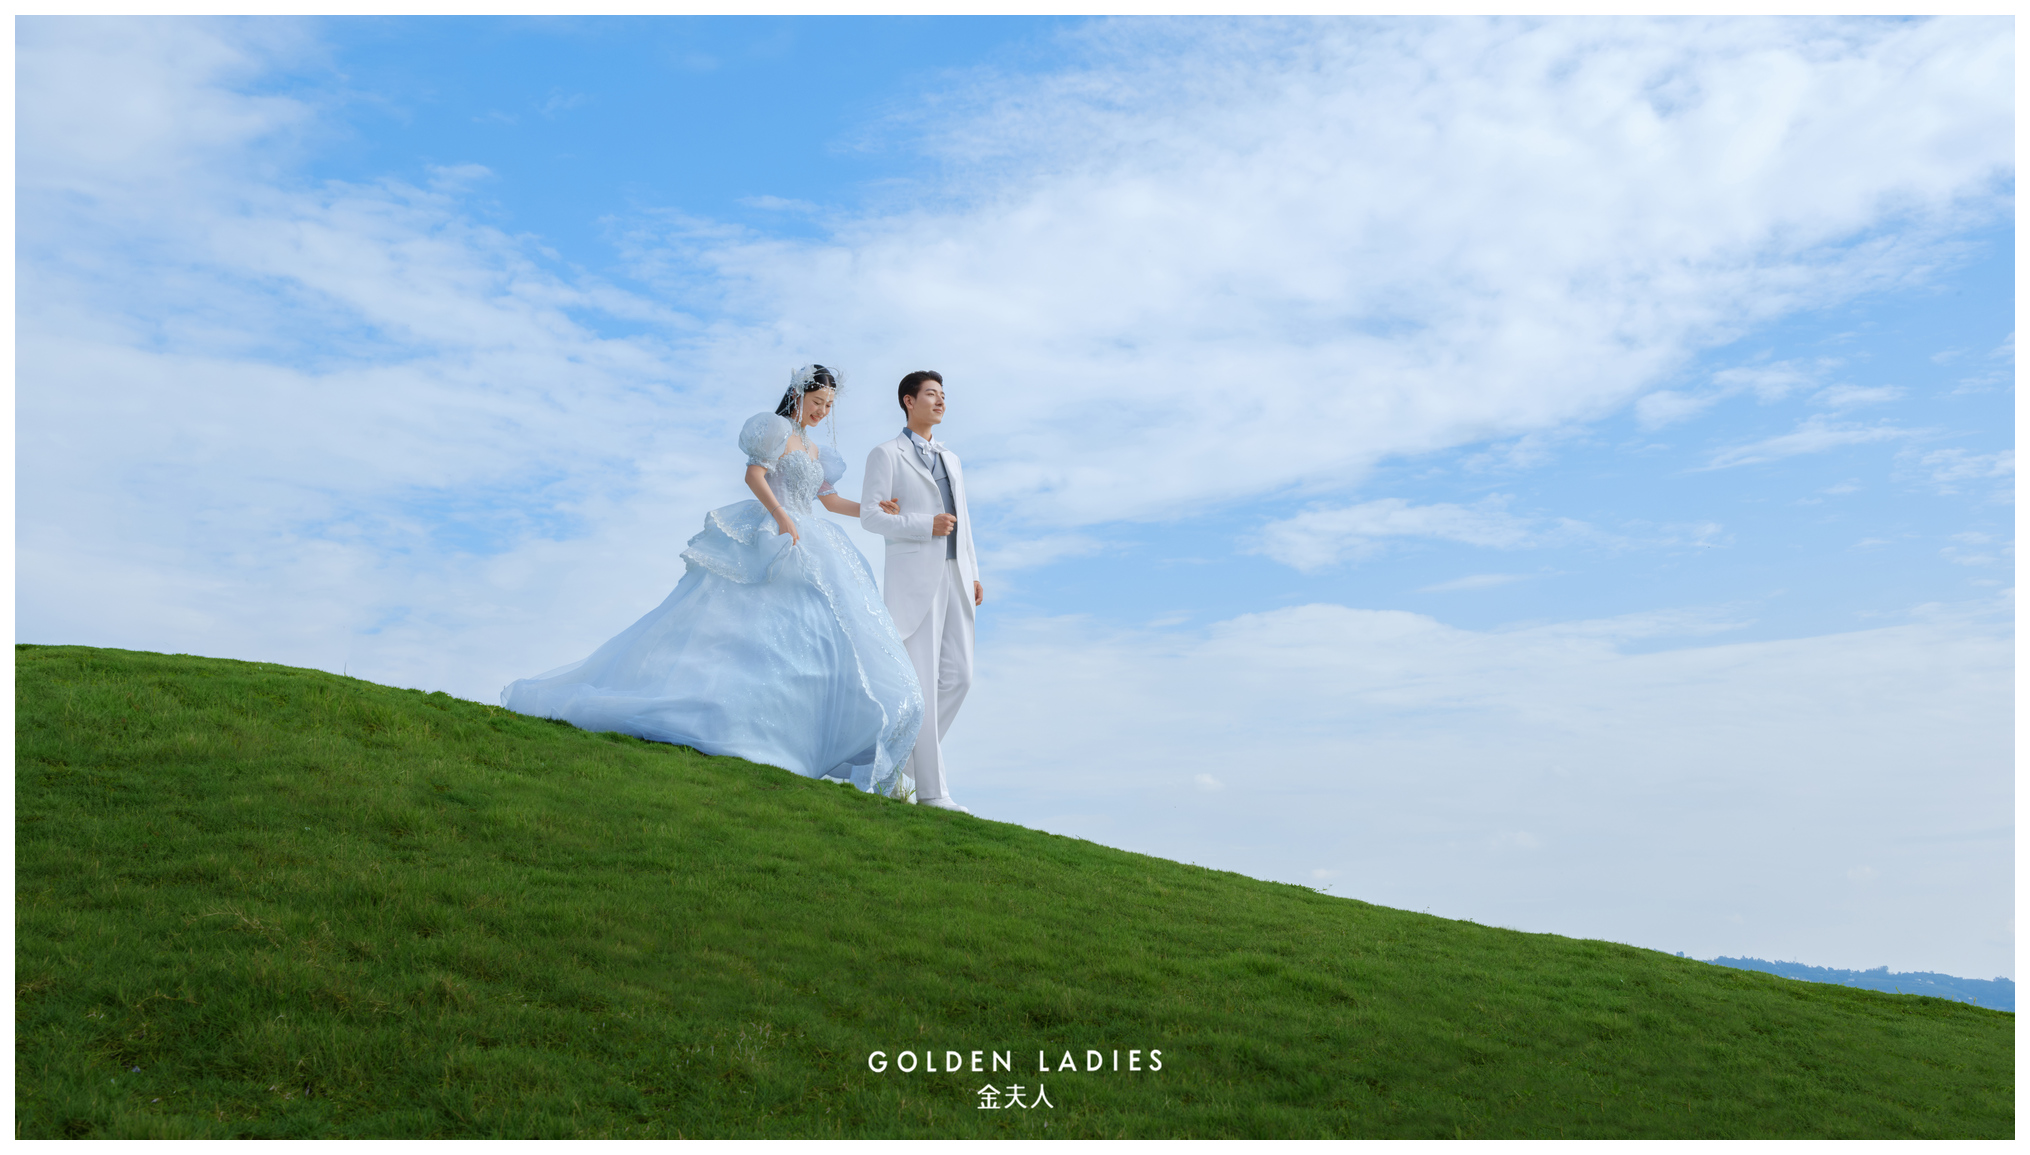 【德国婚纱旅拍】新天鹅堡婚纱旅拍景点大全（上） - Guoling Photography